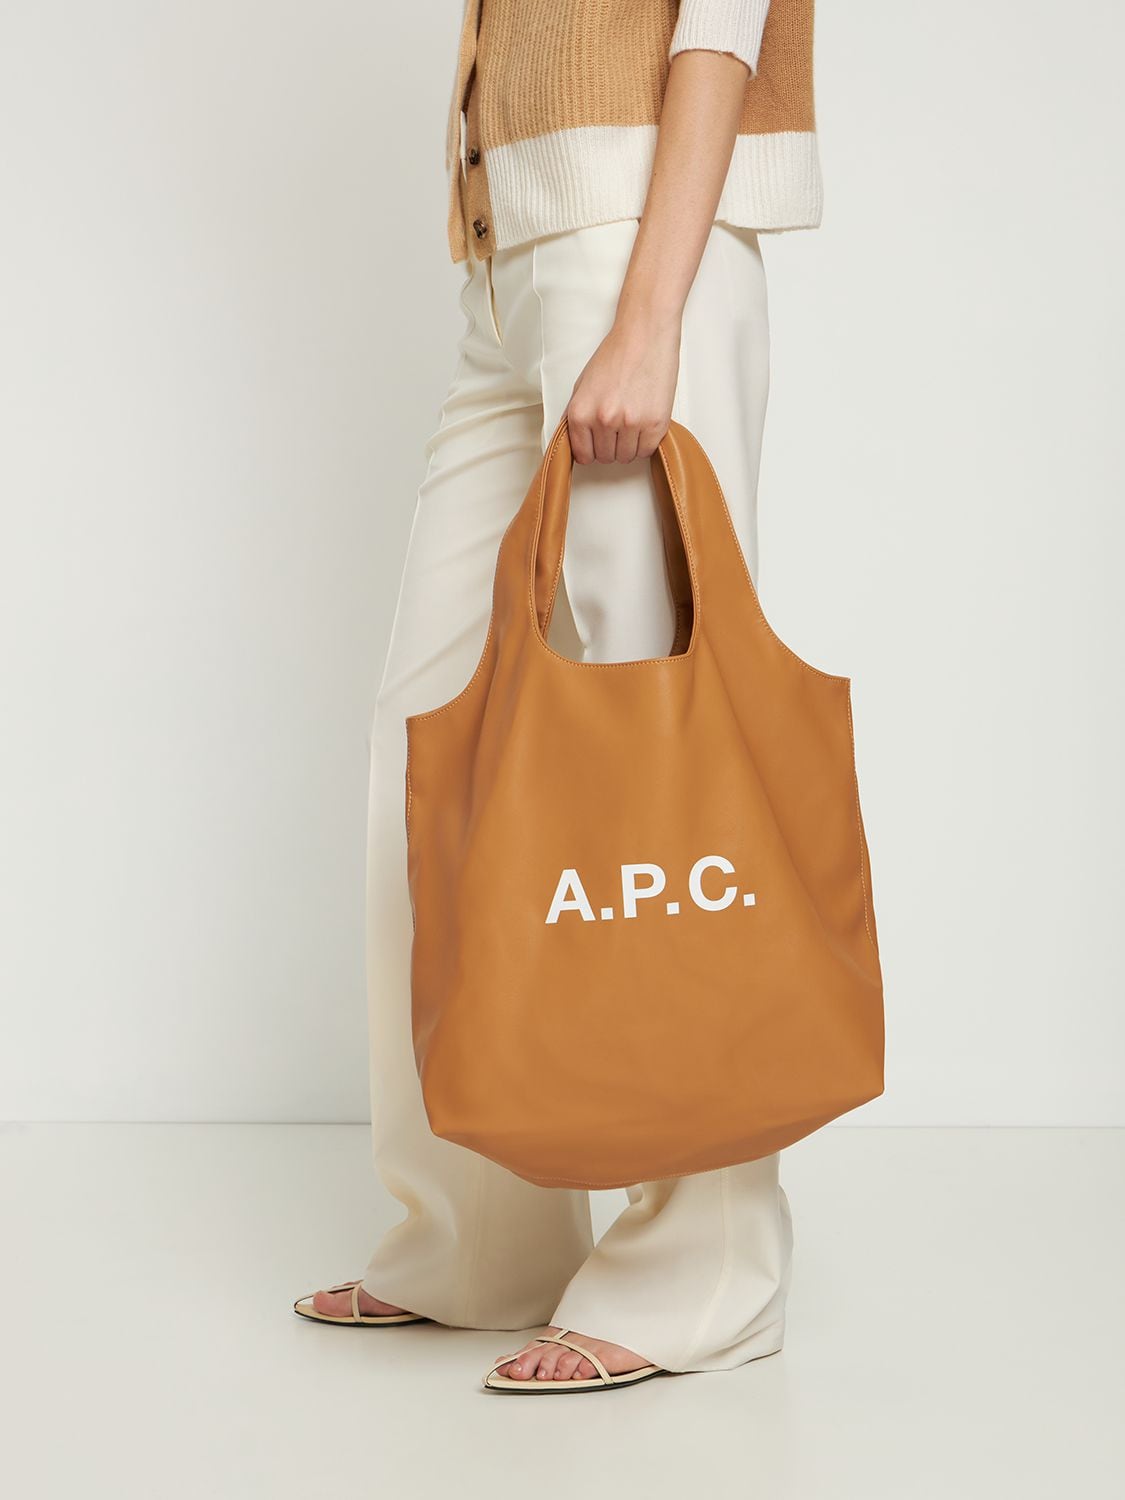 A.P.C Ninon Faux Leather Tote Bag